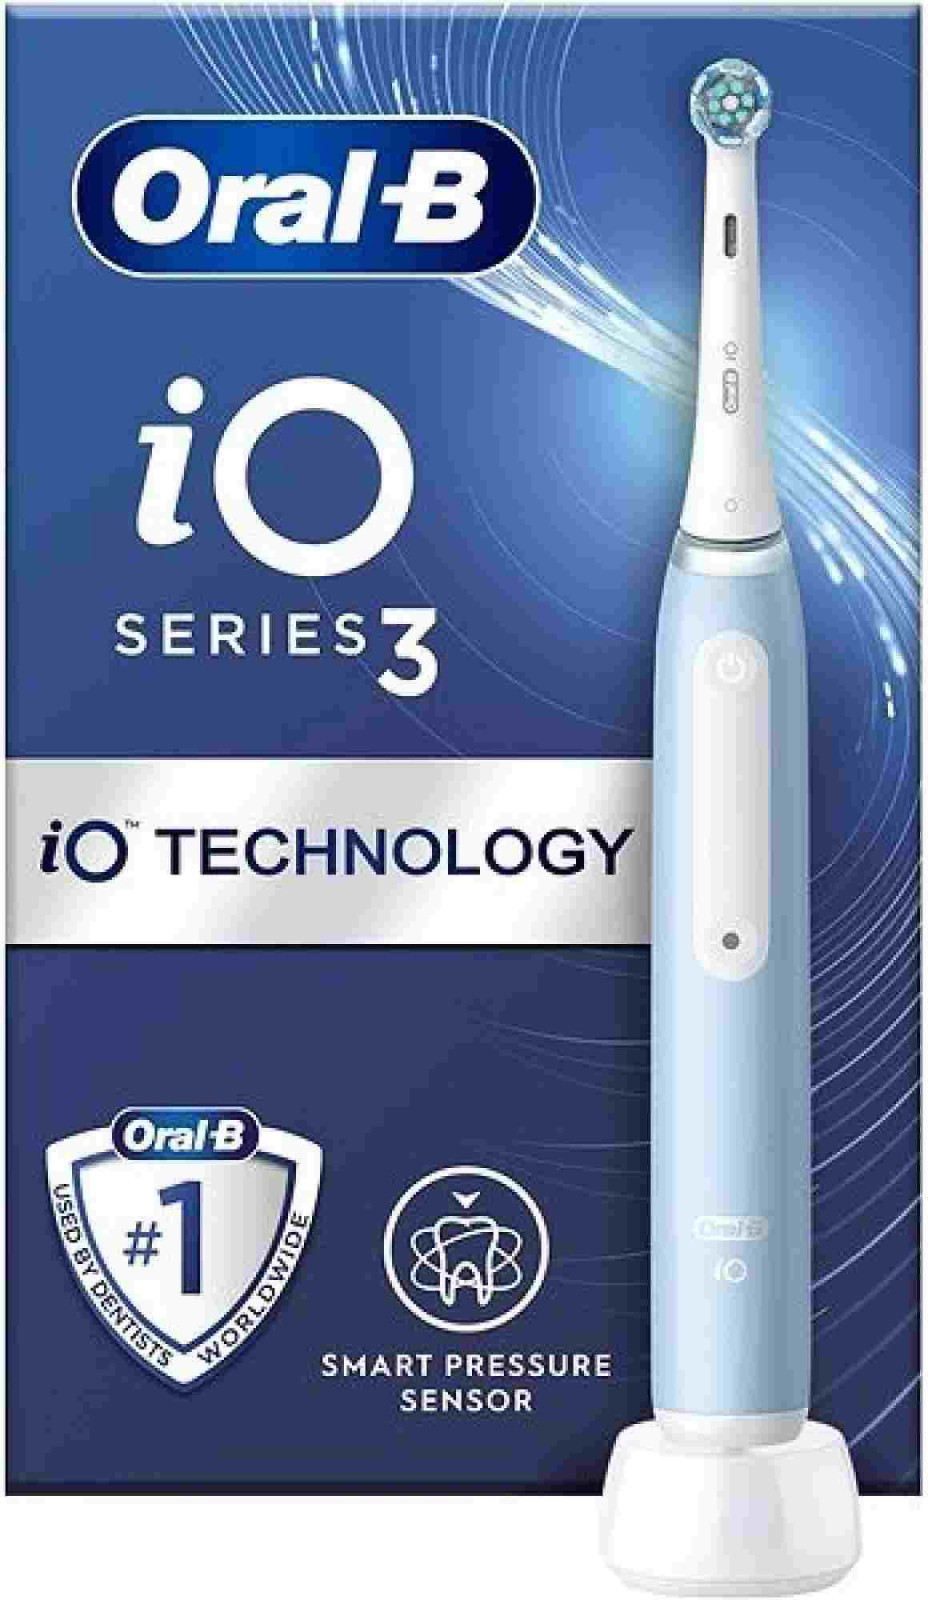 Oral-B iO3 Ice Blue elektrický zubní kartáček, magnetický, 3 režimy, časovač, tlakový senzor, modrý